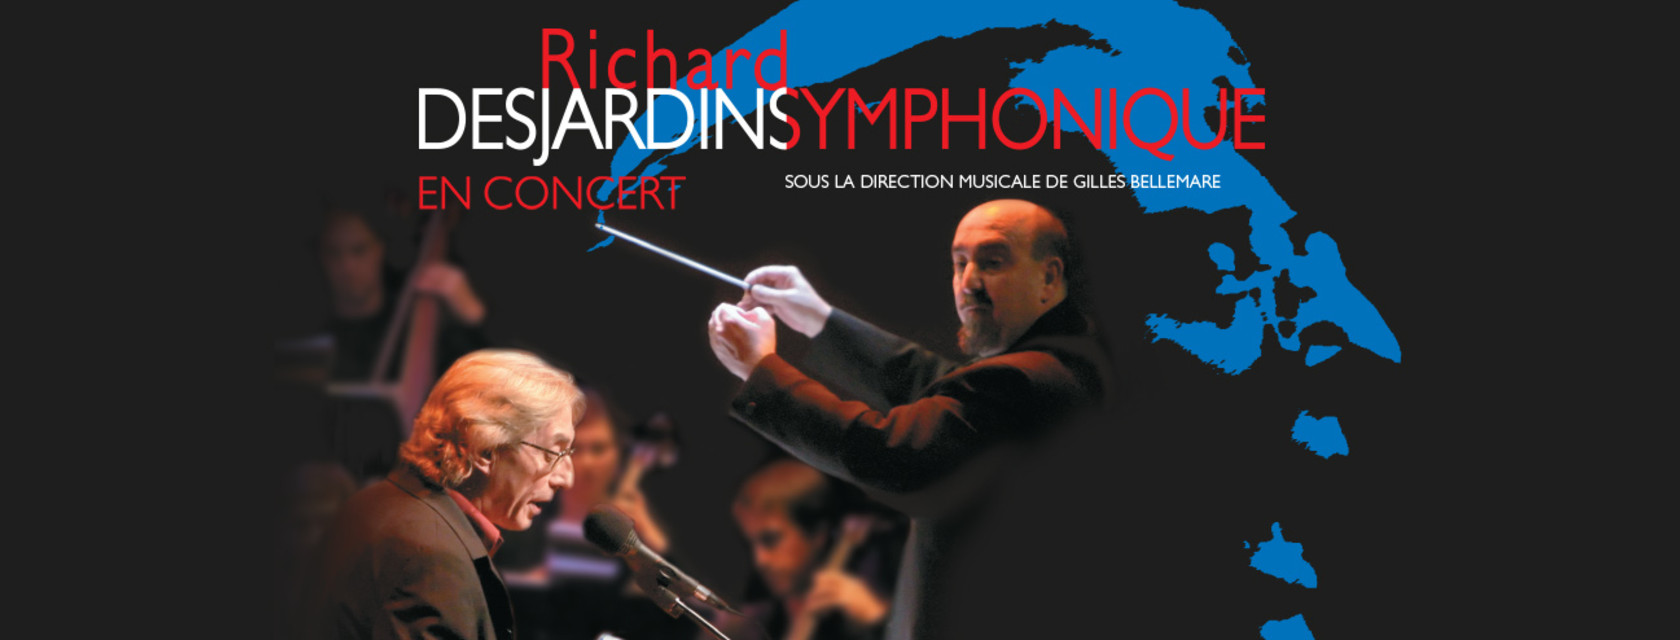 Richard Desjardins symphonique